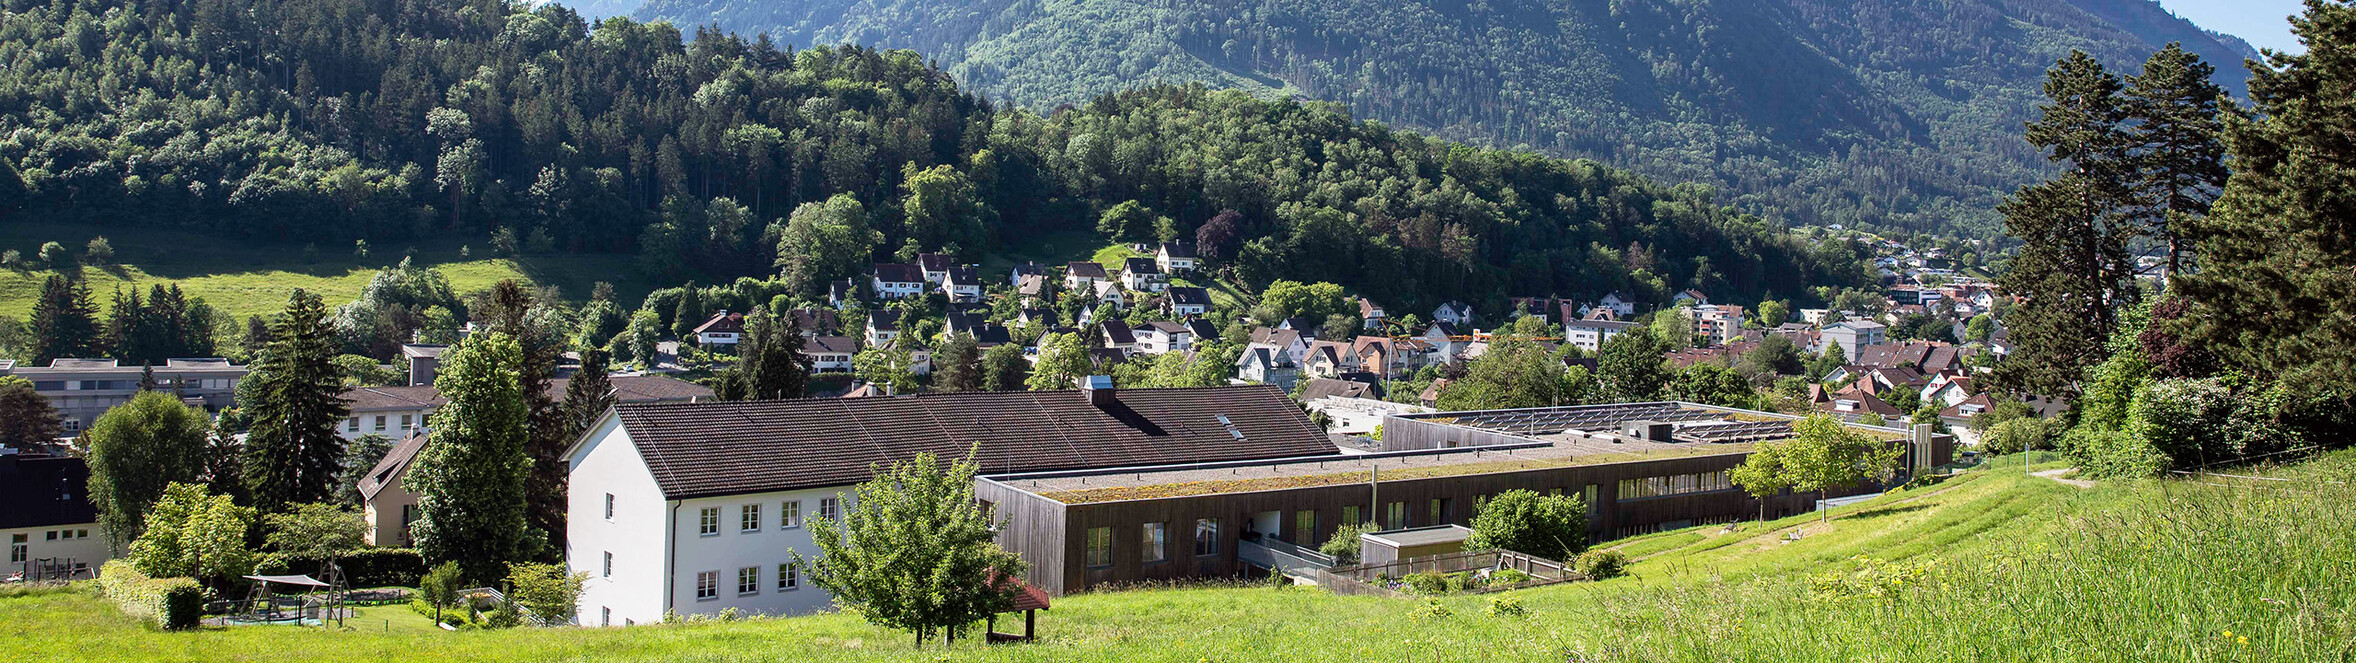 Antoniushaus der Kreuzschwestern in Feldkirch, Vorarlberg